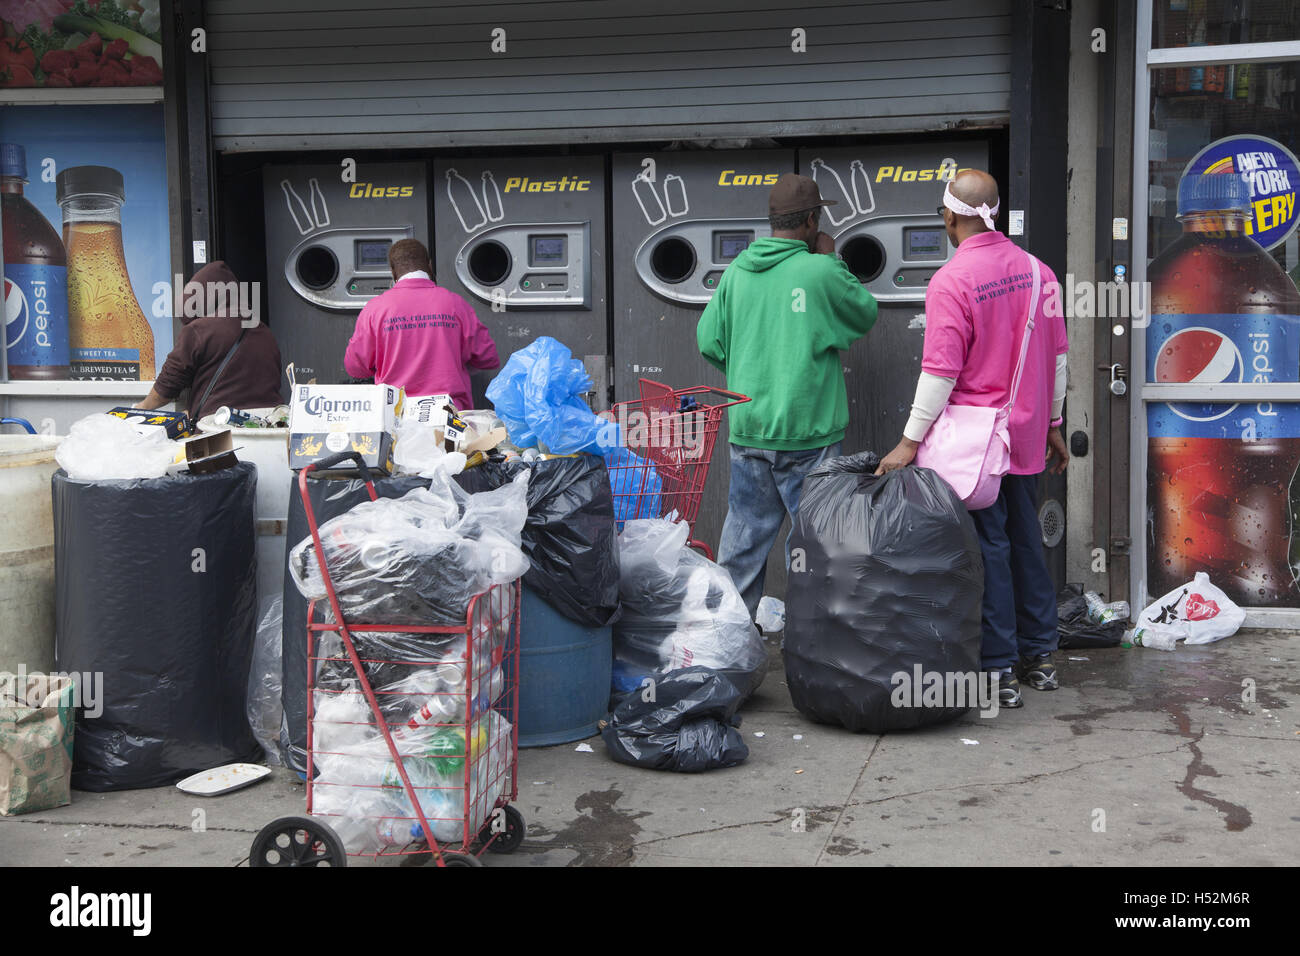 Menschen Geld in Dosen, Plastik und Glasflaschen, die sie aus Müll abgeholt  haben, löschte auf den Straßen von Brooklyn, NY Stockfotografie - Alamy